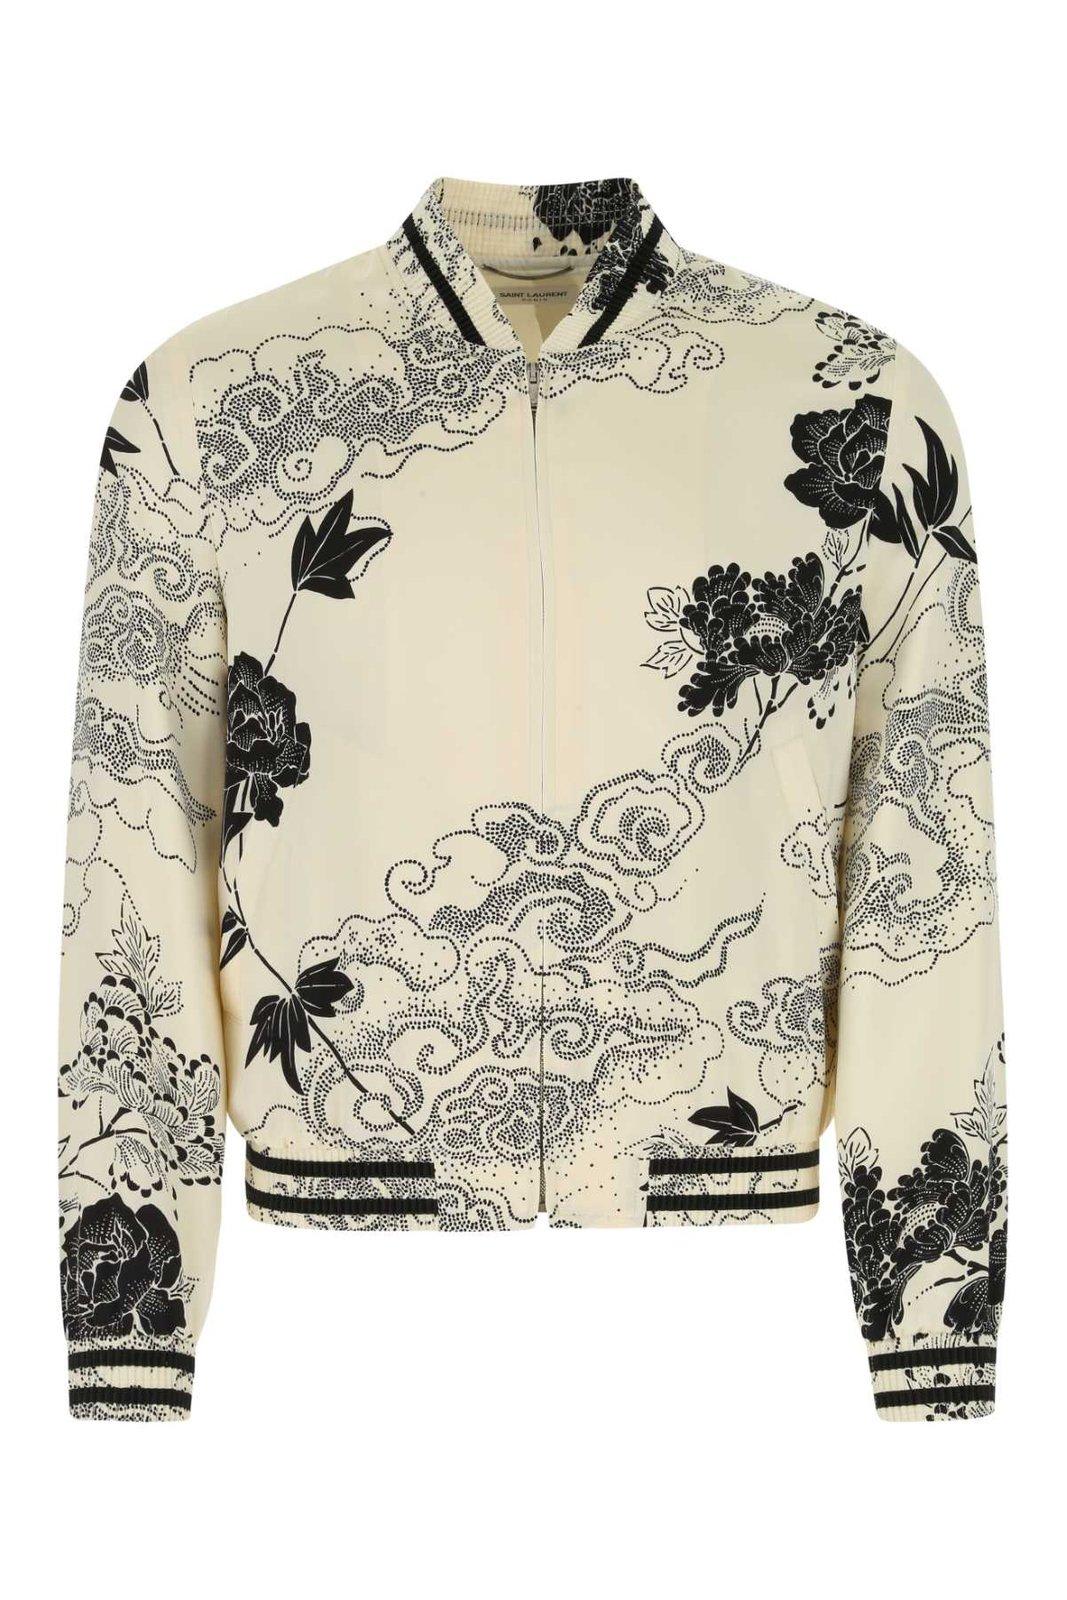 Saint Laurent Floral Printed Long-sleeved Bomber Jacket